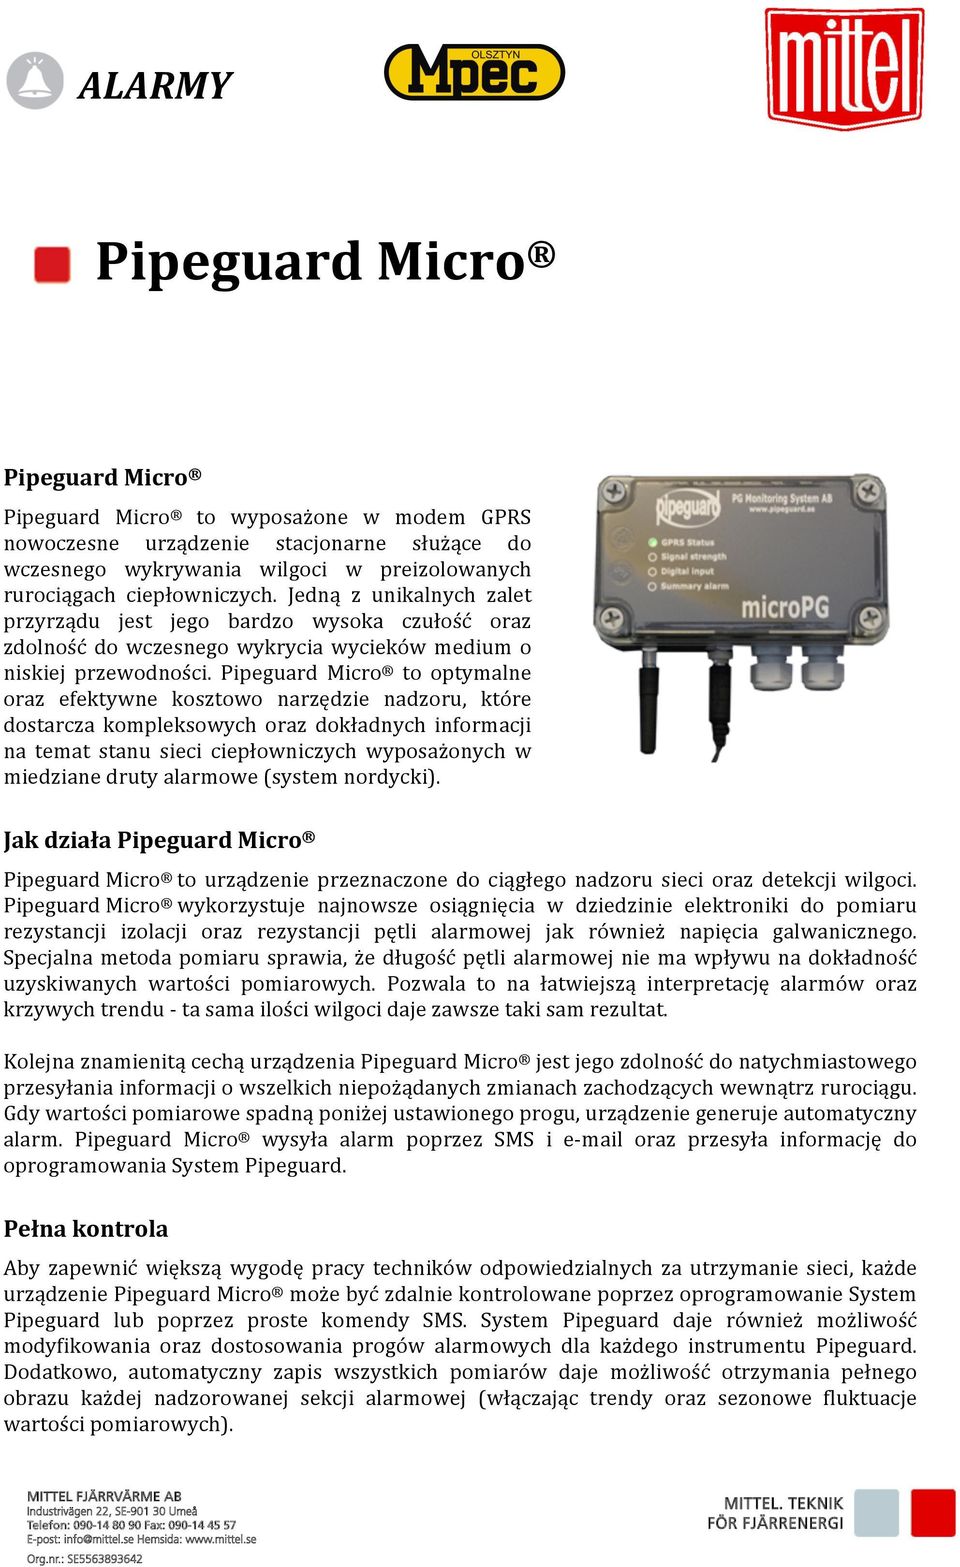 Pipeguard Micro to optymalne oraz efektywne kosztowo narzędzie nadzoru, które dostarcza kompleksowych oraz dokładnych informacji na temat stanu sieci ciepłowniczych wyposażonych w miedziane druty